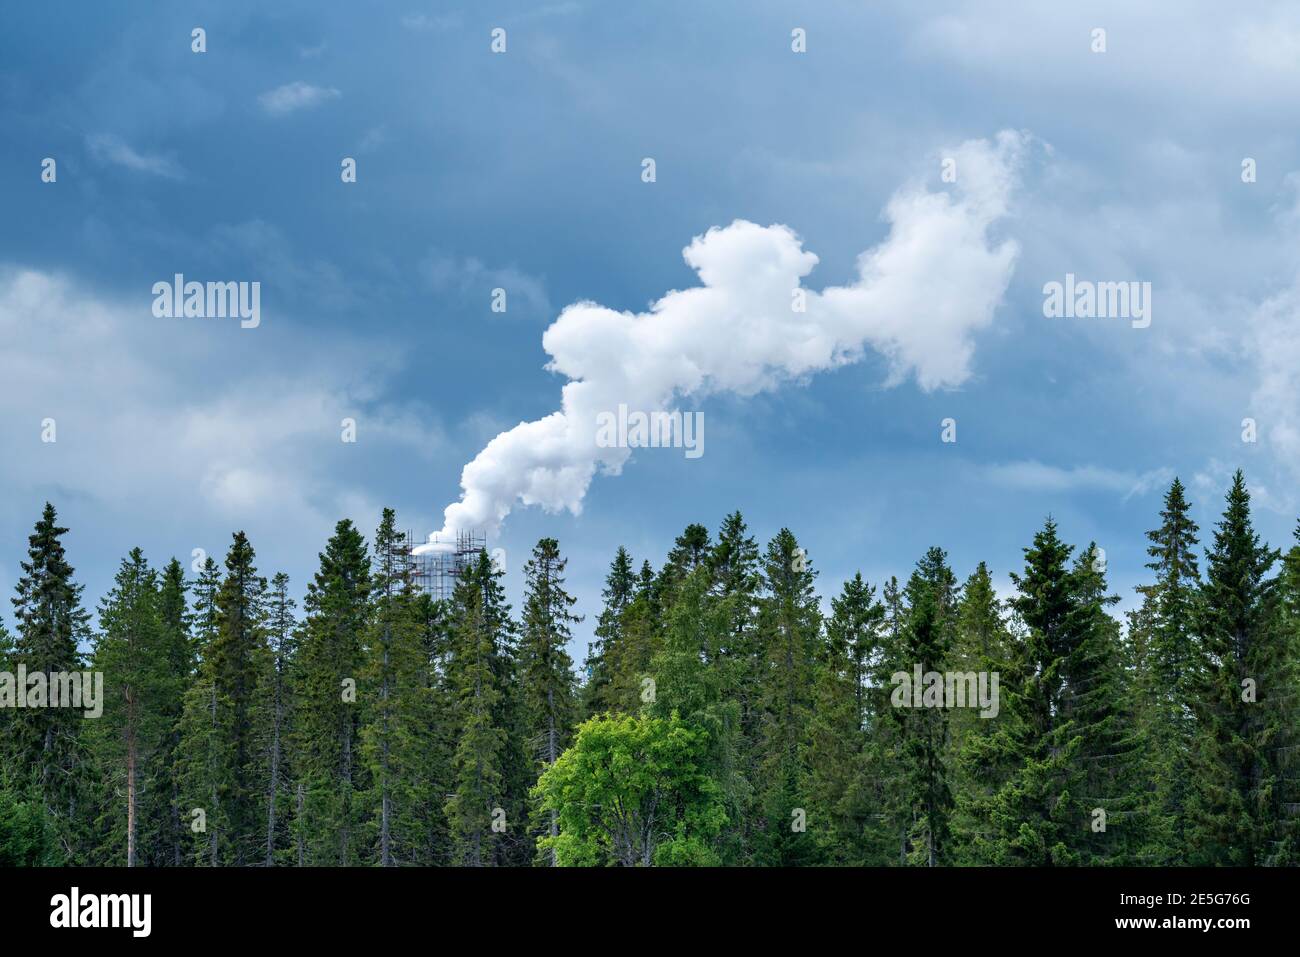 Fumo plume da industria che emette gas serra nell'atmosfera sullo sfondo degli alberi della foresta e cielo blu nuvoloso. Foto Stock